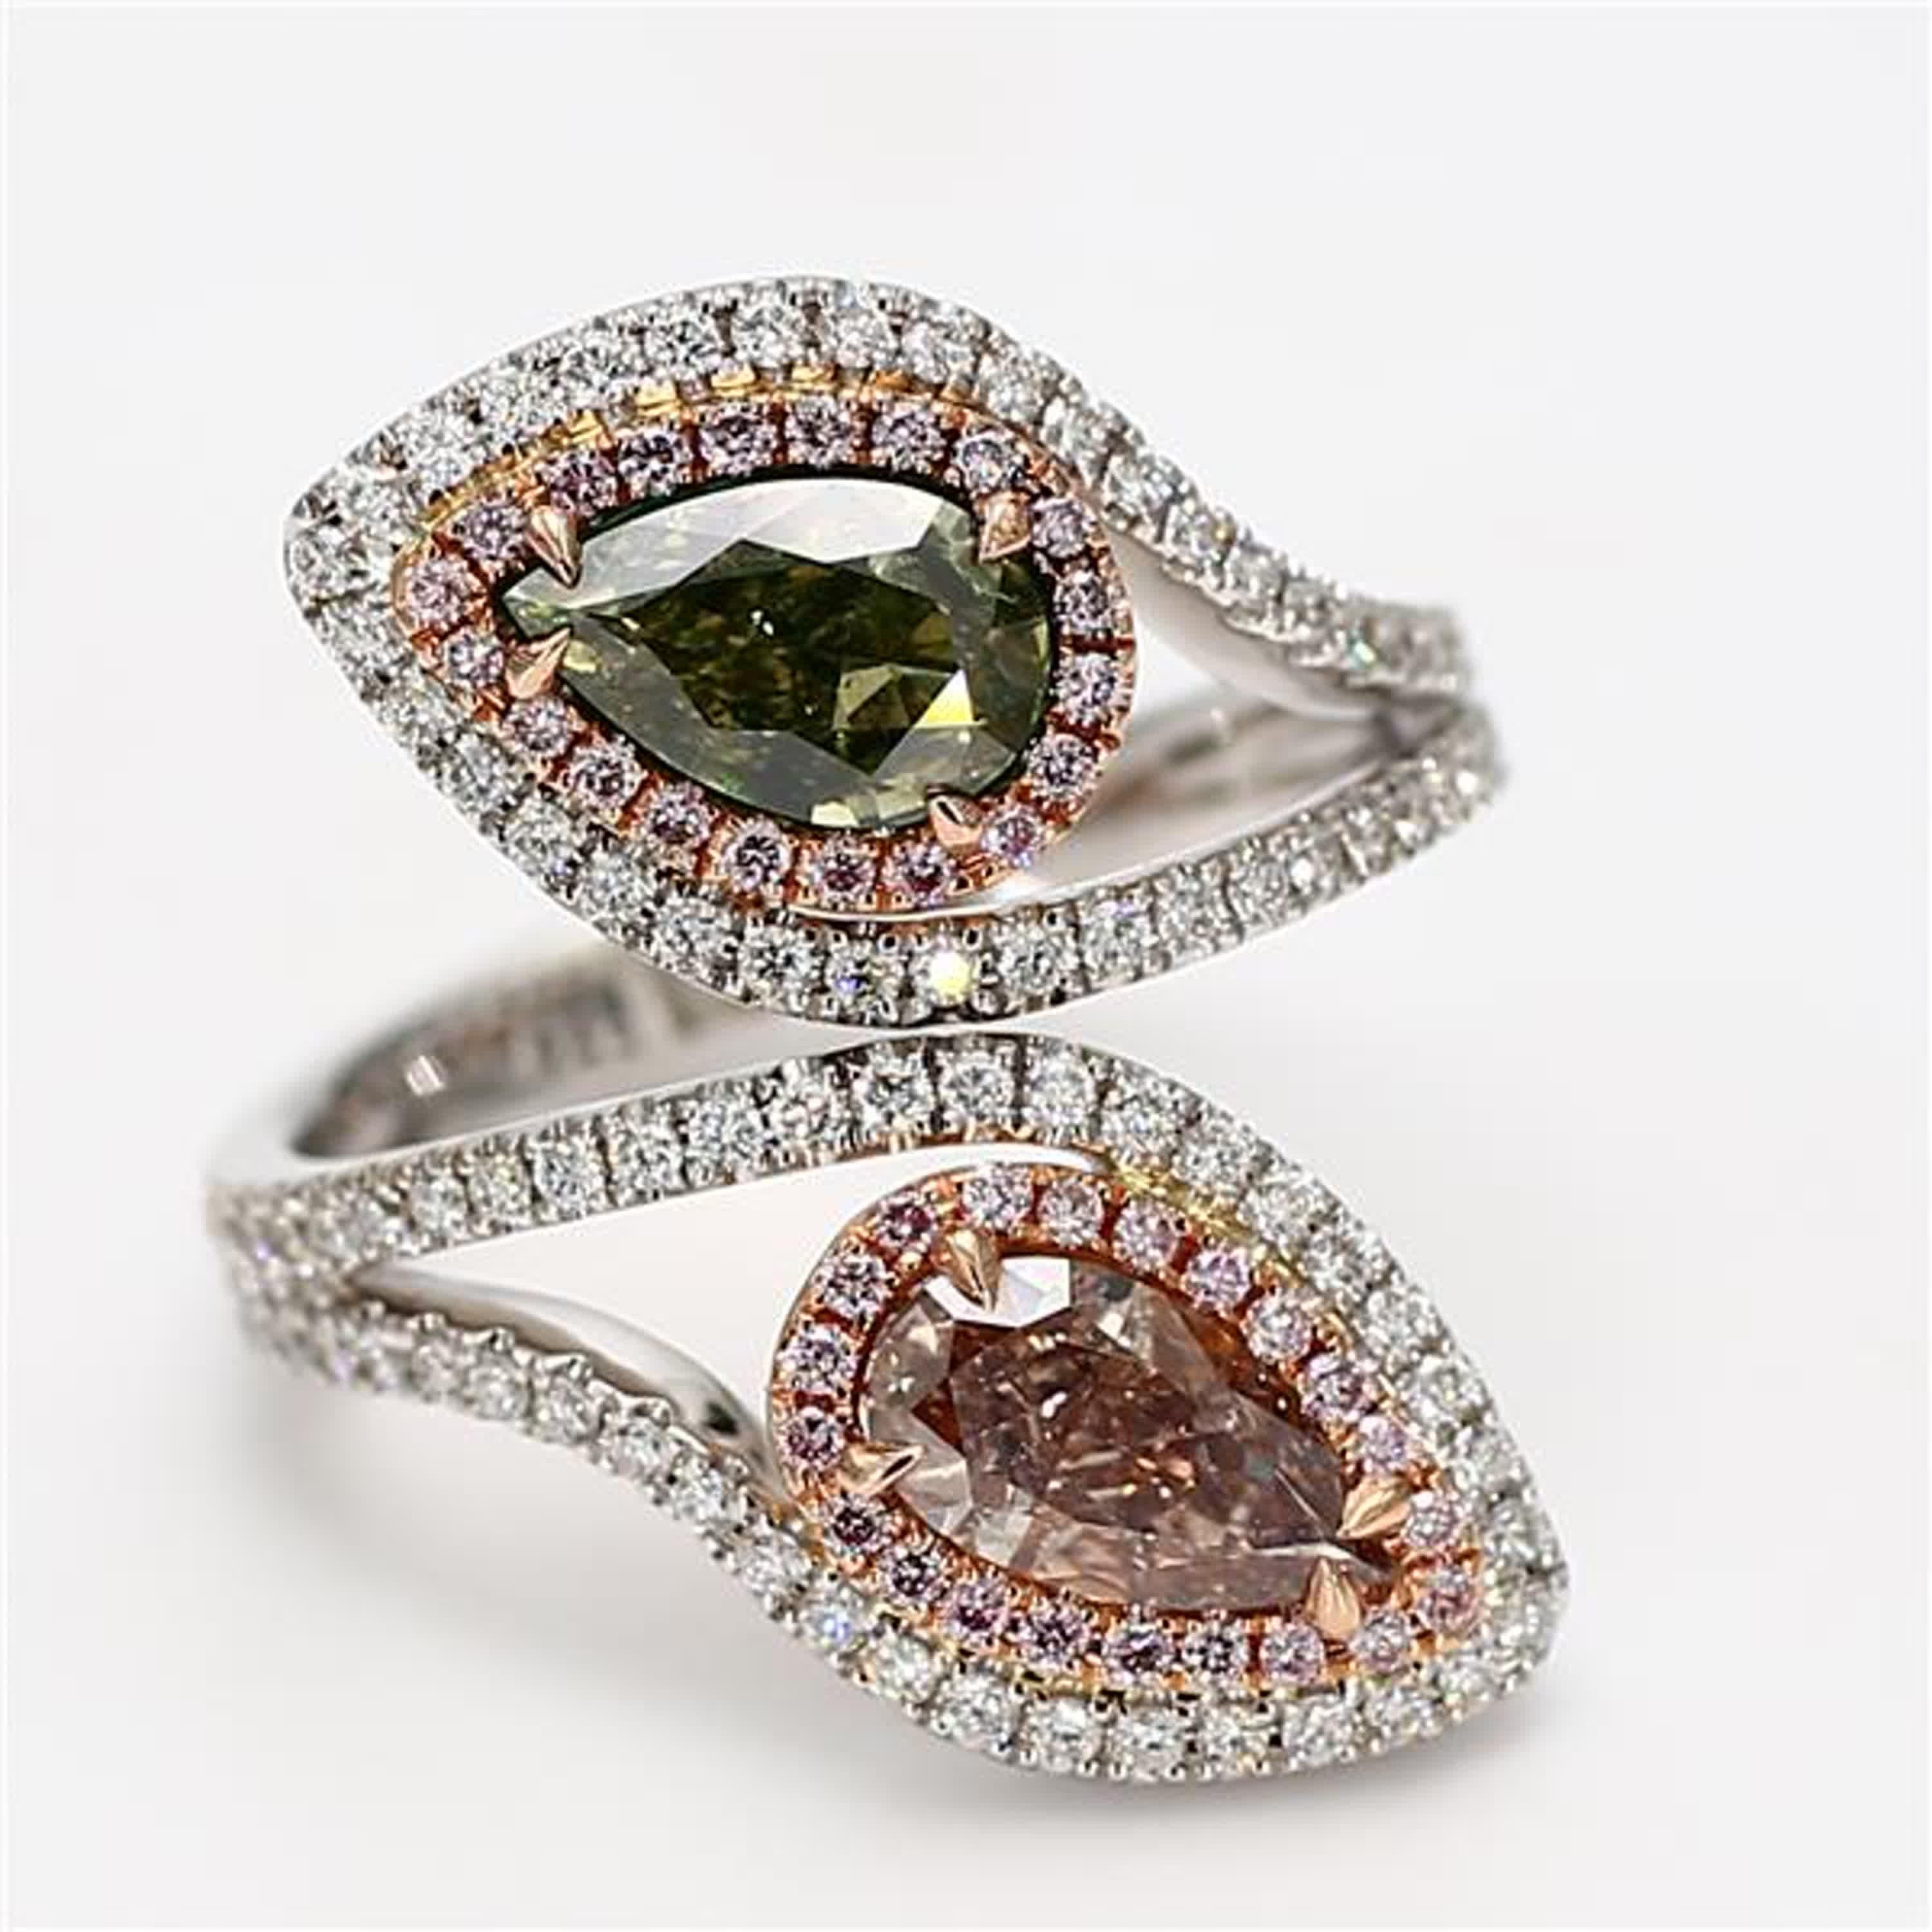 Der klassische GIA-zertifizierte Diamantring von RareGemWorld. In einer wunderschönen Fassung aus 18 Karat Rosé- und Weißgold mit einem natürlichen rosa Diamanten im Birnenschliff und einem natürlichen grünen Diamanten im Birnenschliff. Die